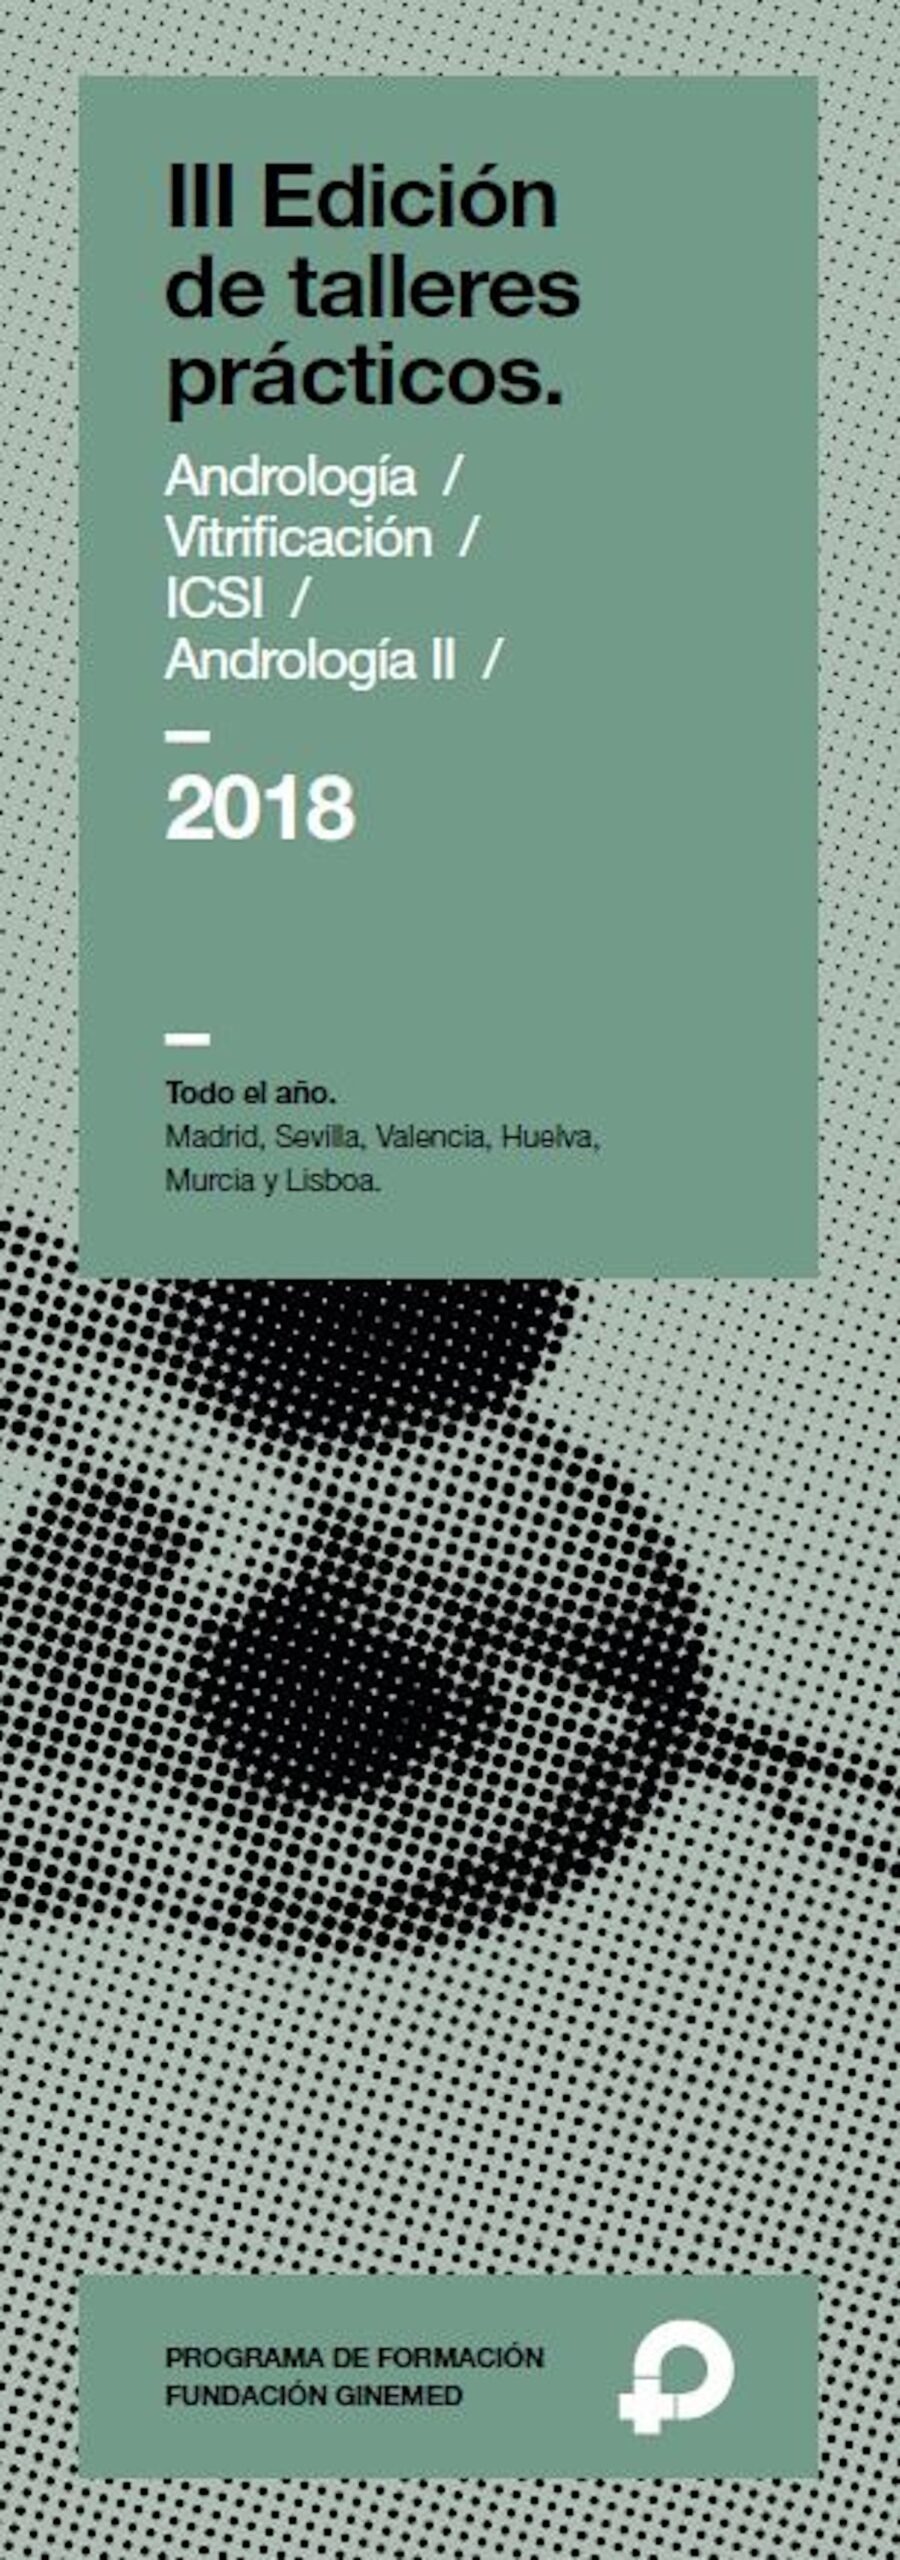 Cartel III Edición de talleres prácticos. Andrología, vitrificación, ICSI y Andrología II